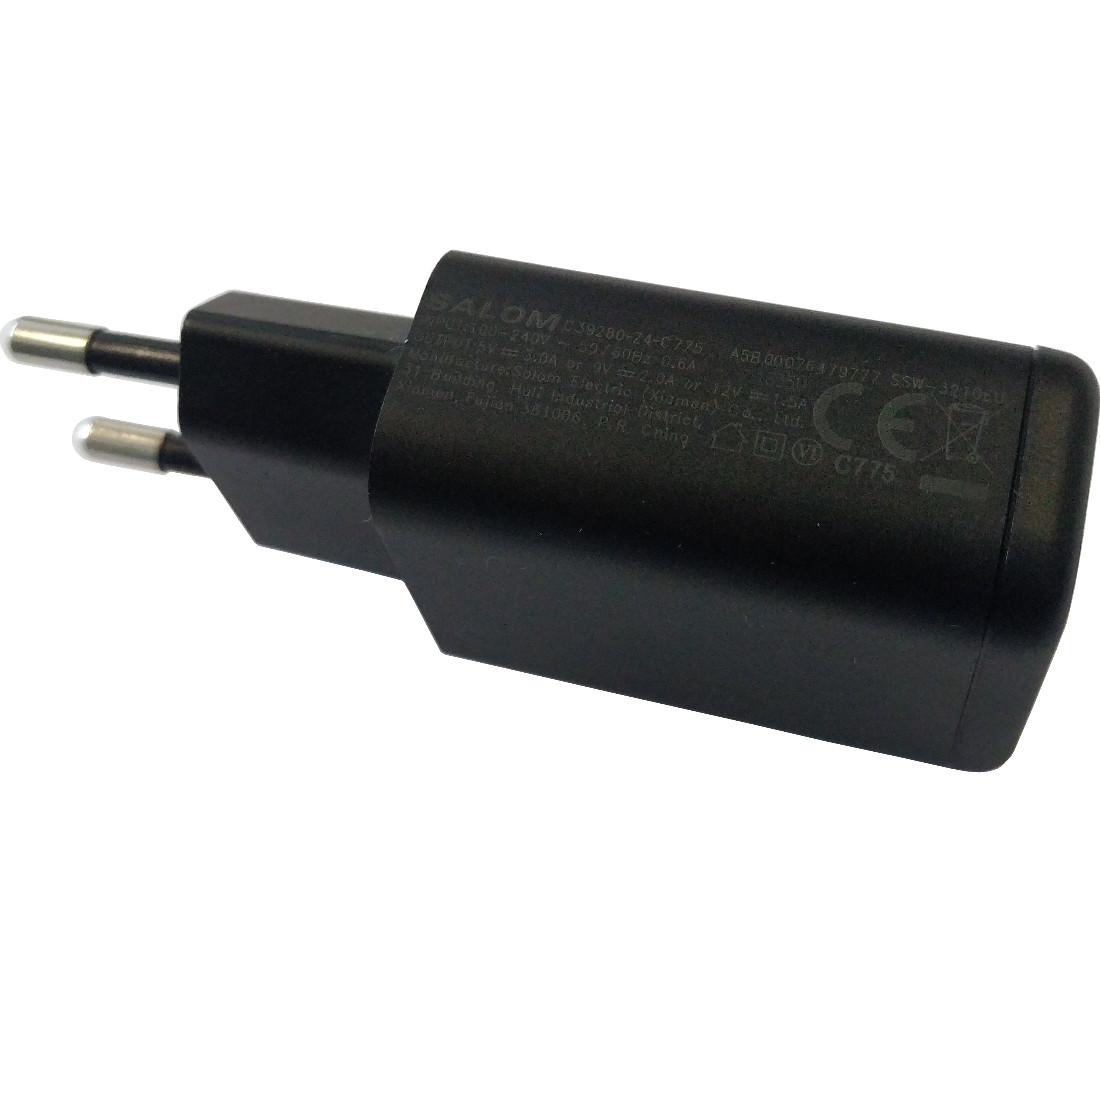 2in1 cavo di ricarica caricabatterie Micro USB per Gigaset gs100 gs185 cavo dati 